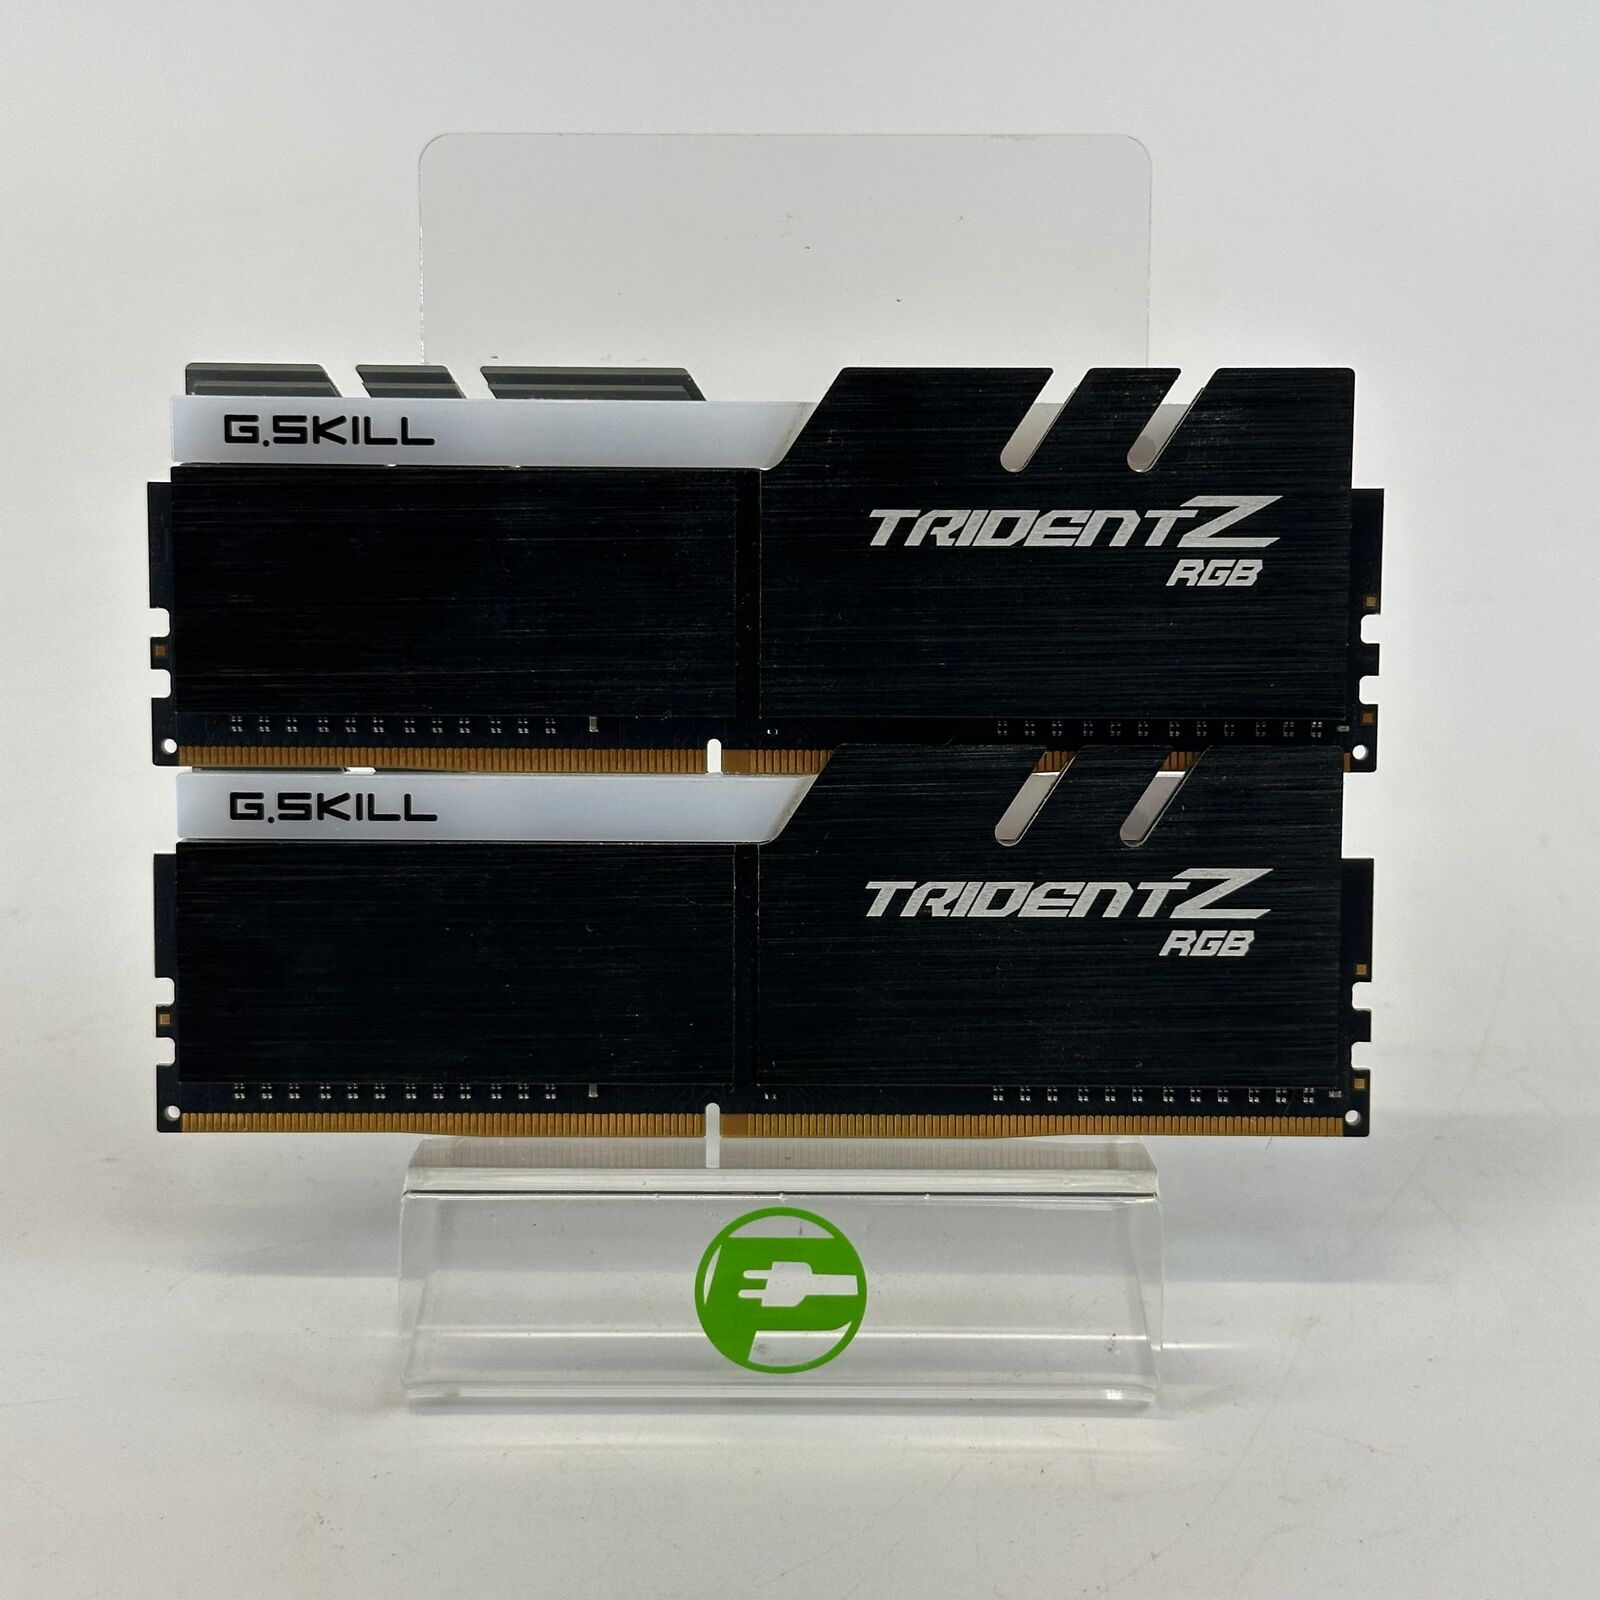 G.Skill Trident Z RGB 16GB (2x8GB) DDR4 3200MHz F4-3200C14D-16GTZRX